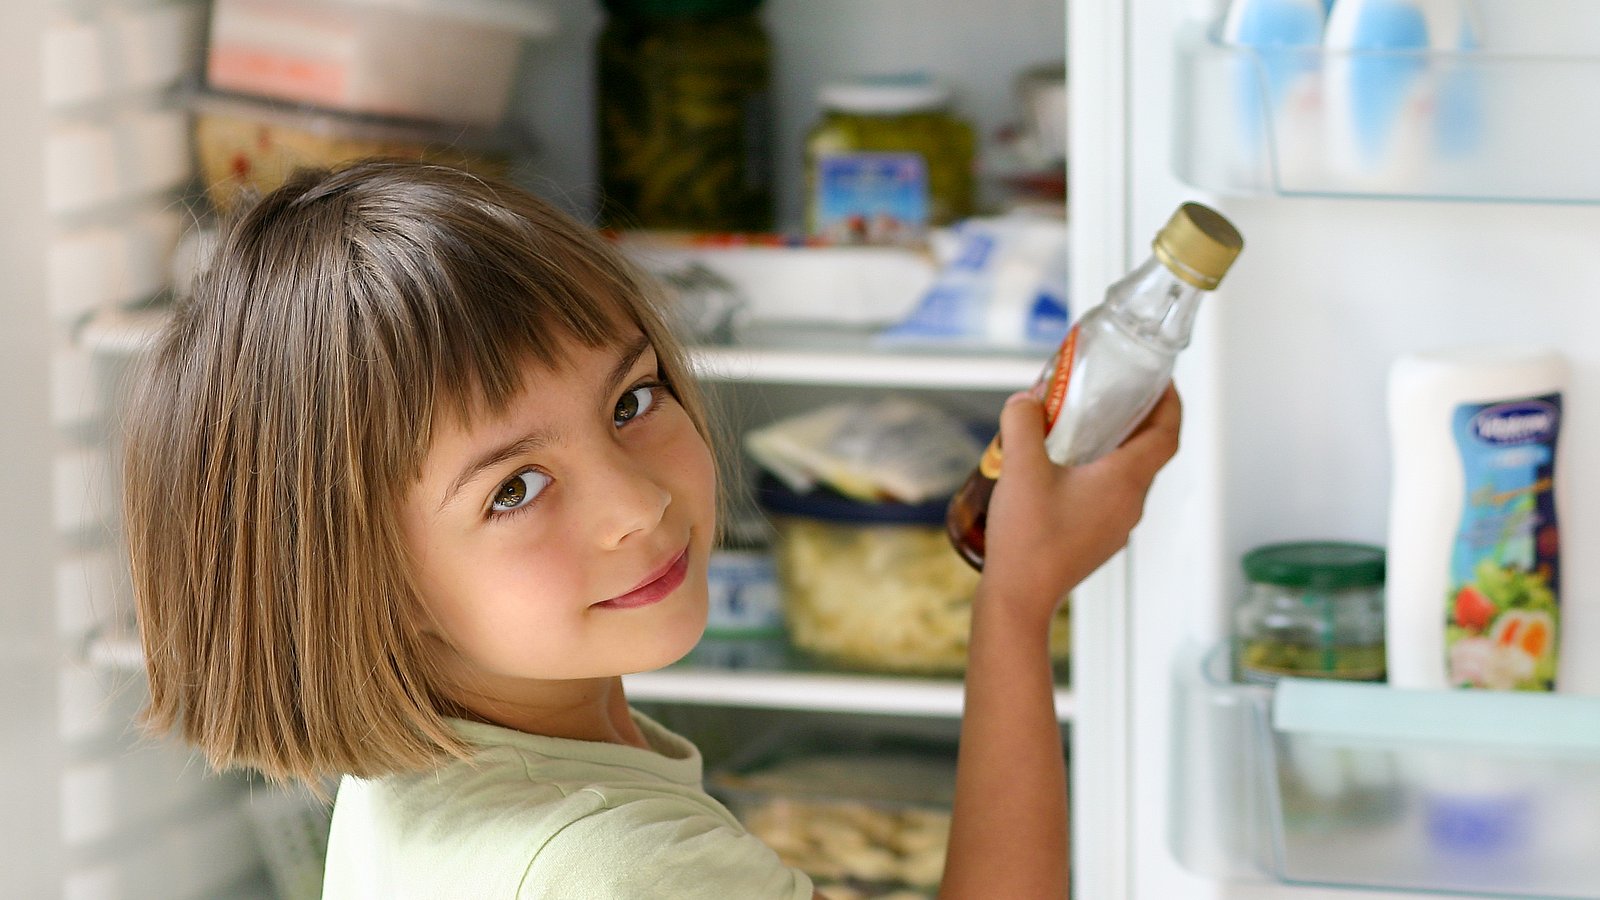 Ein Kind hält eine Flasche in der Hand und steht vor einem offenen Kühlschrank. 